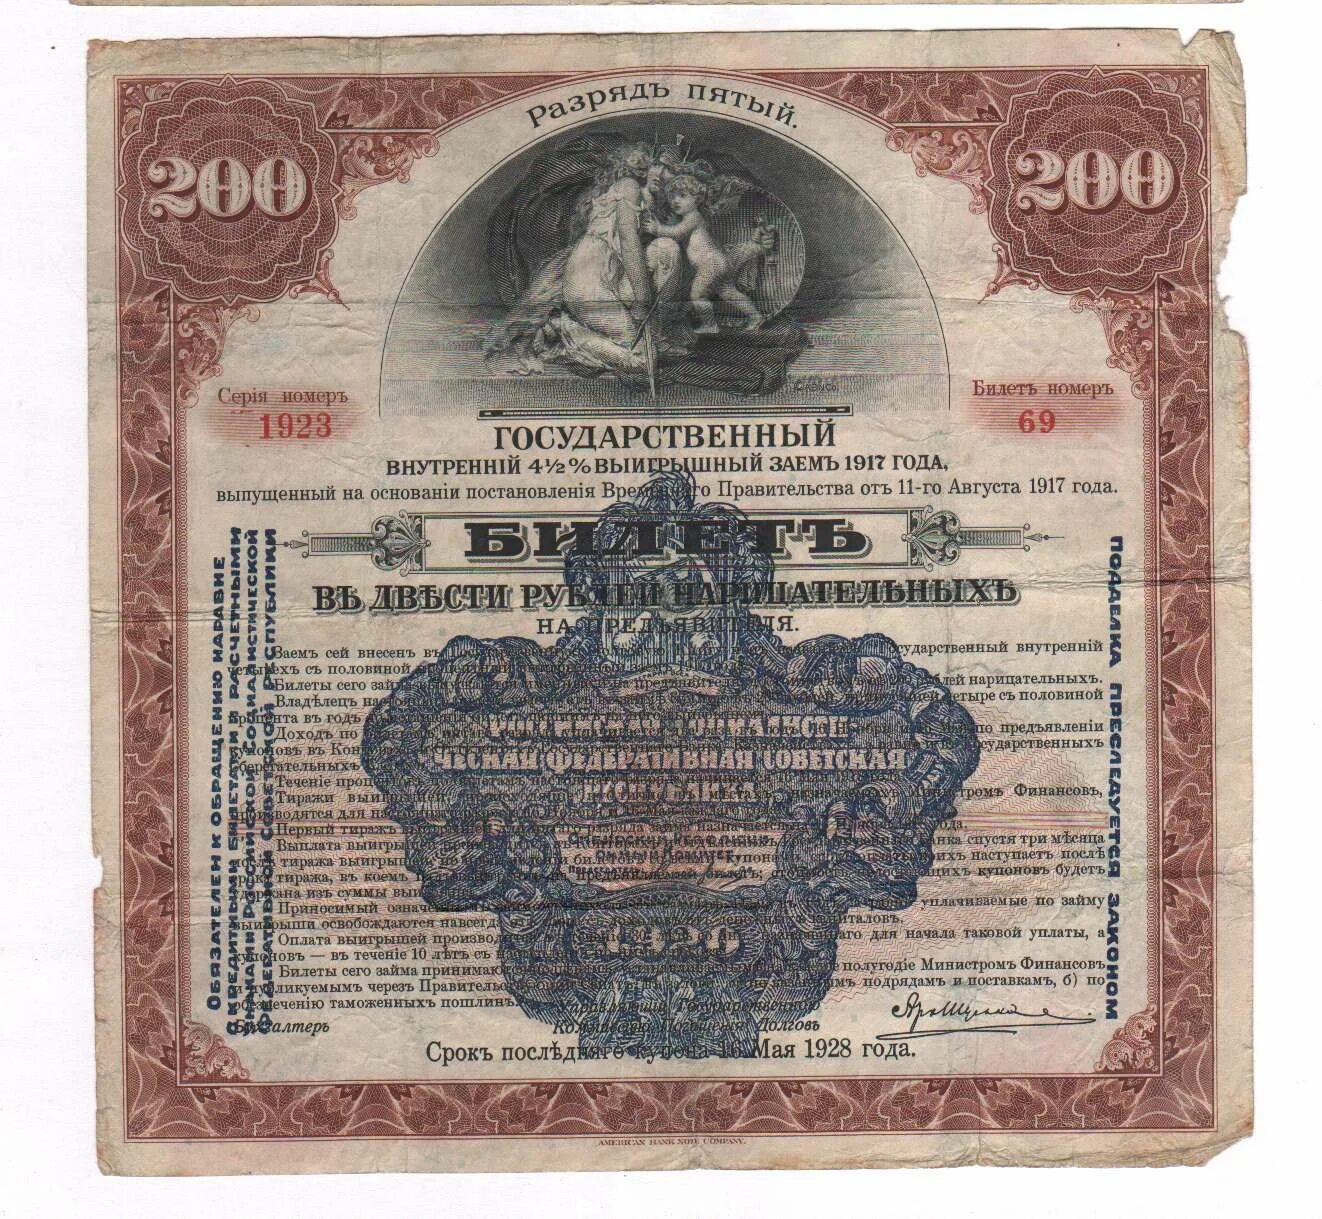 3 рубля займы. 200р внутренний заем 1917г. Облигация государственного выигрышного займа 1917 года. Билет государственного займа это. Государственный выигрышный займ.